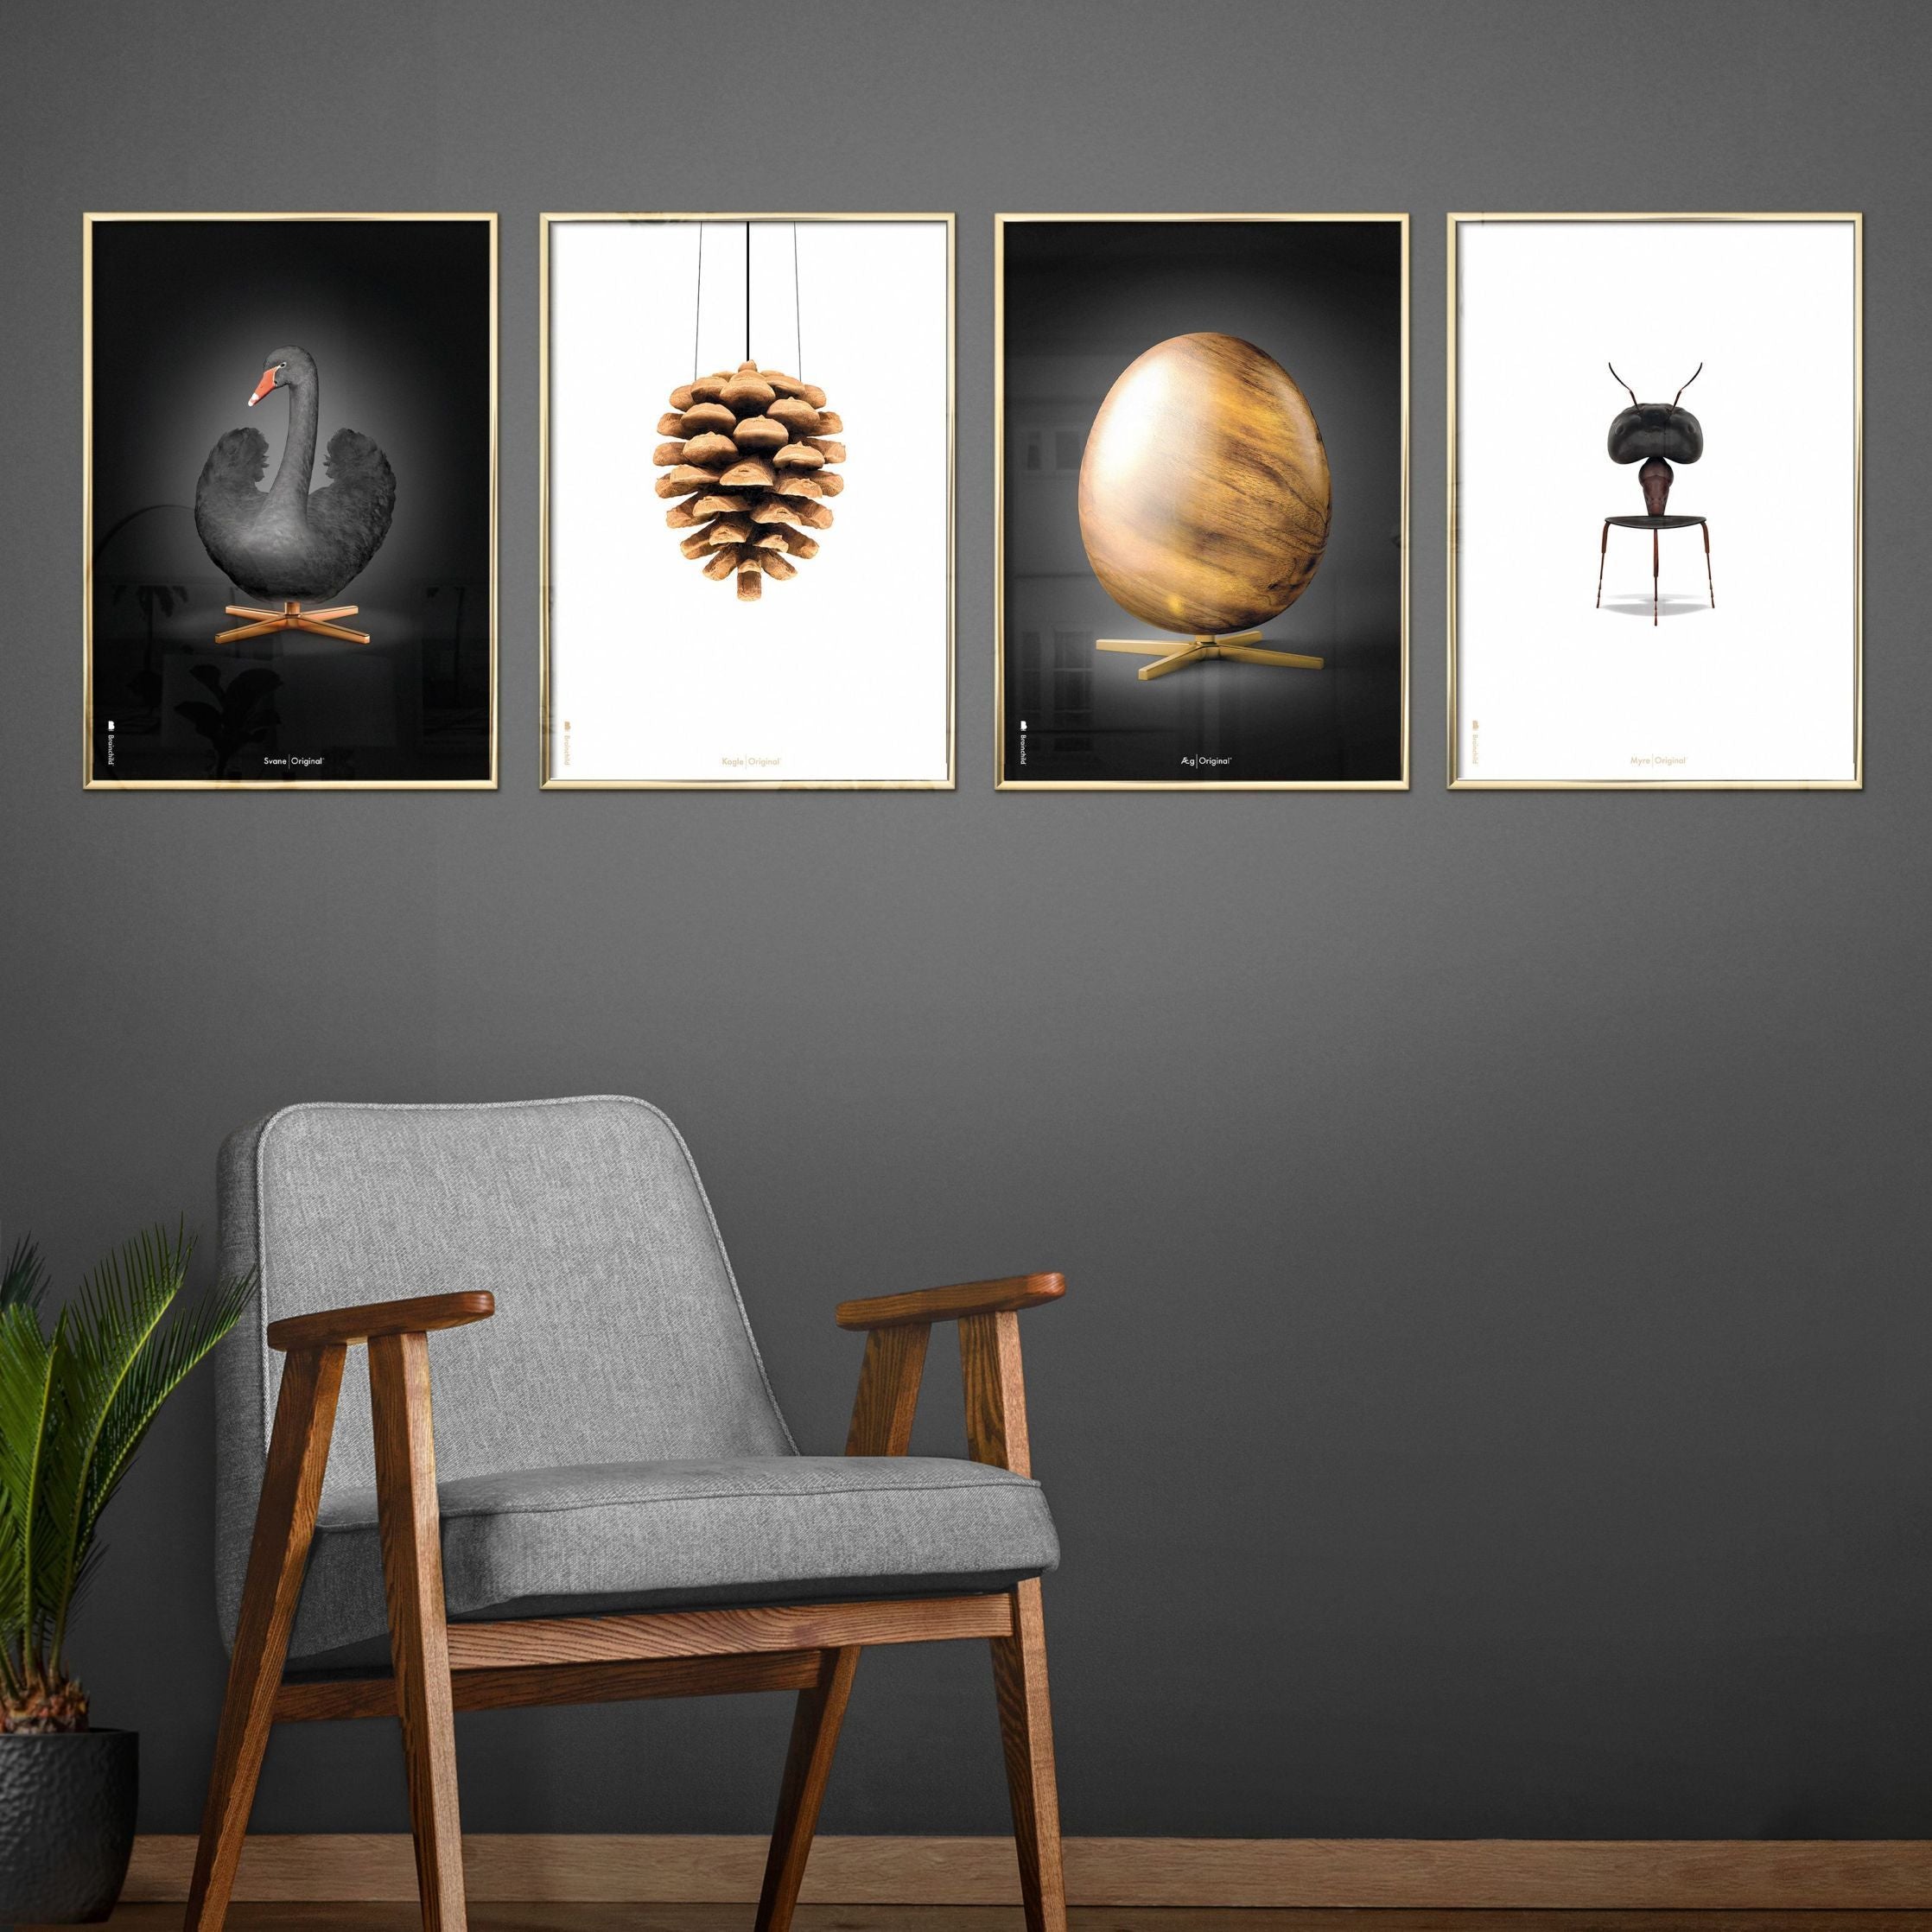 Pomysłowy plakat mrówek, rama w czarnym lakierowanym drewnie 70x100 cm, białe tło